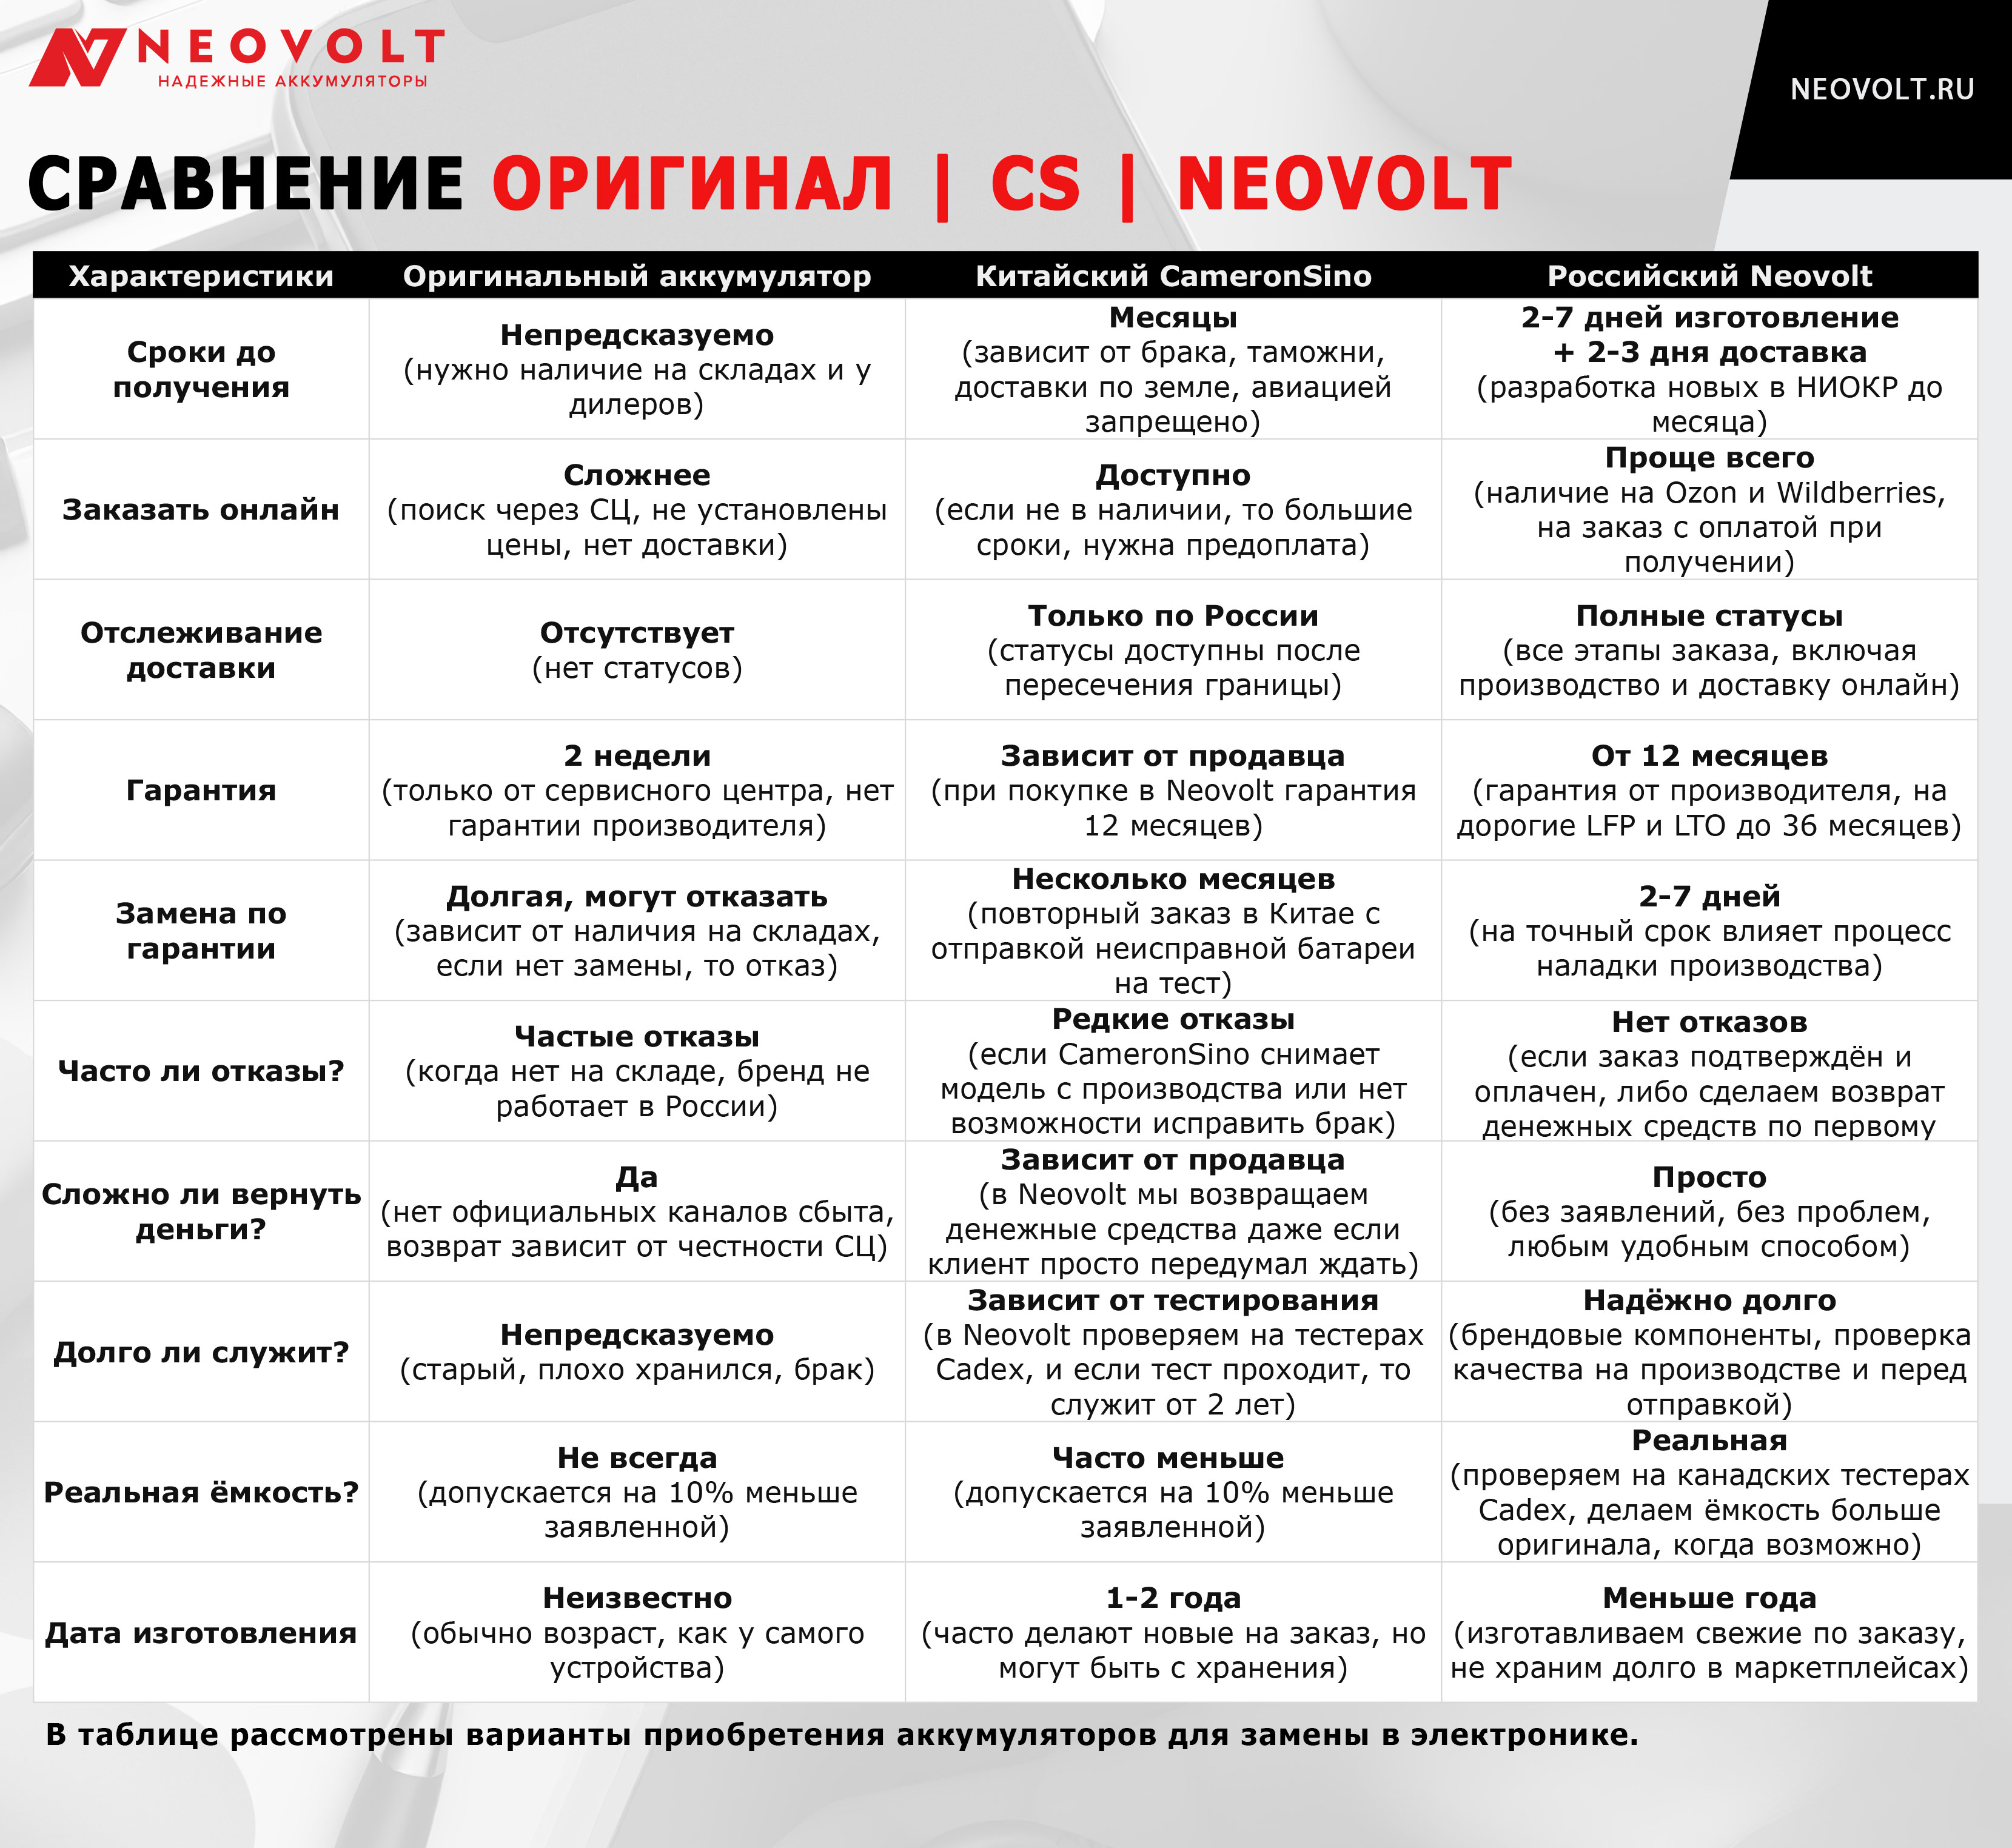 Узнайте, почему заказывать российские аккумуляторы Neovolt выгоднее, чем ждать китайские CameronSino, которые не являются оригинальными и не лучше по качеству.